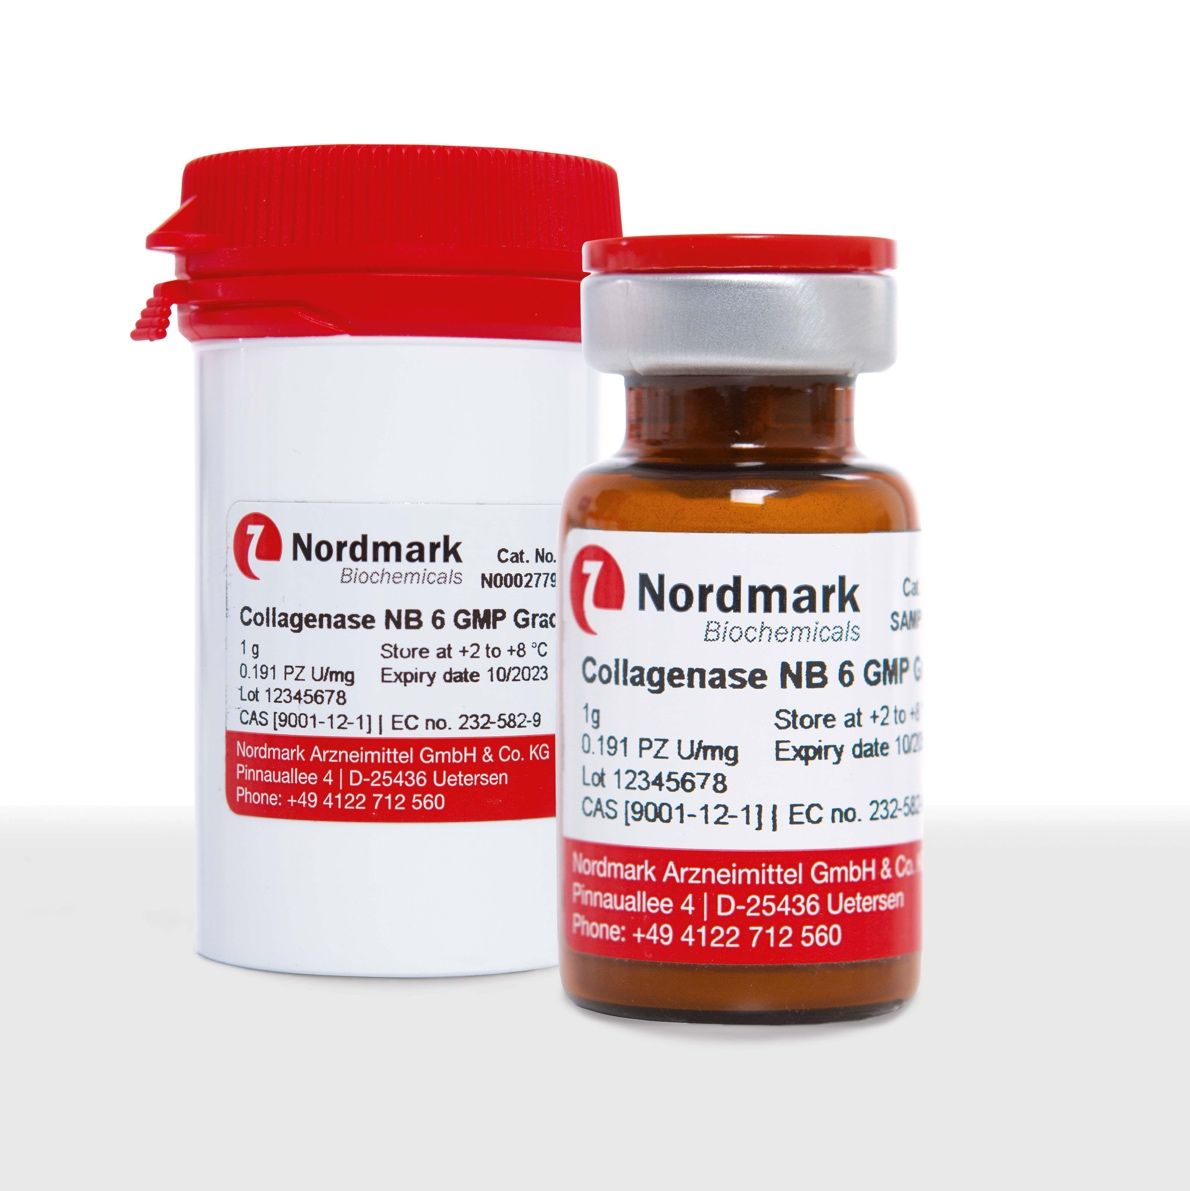 胶原酶（Nordmark）—细胞组织解离应用—无动物源和GMP级可选